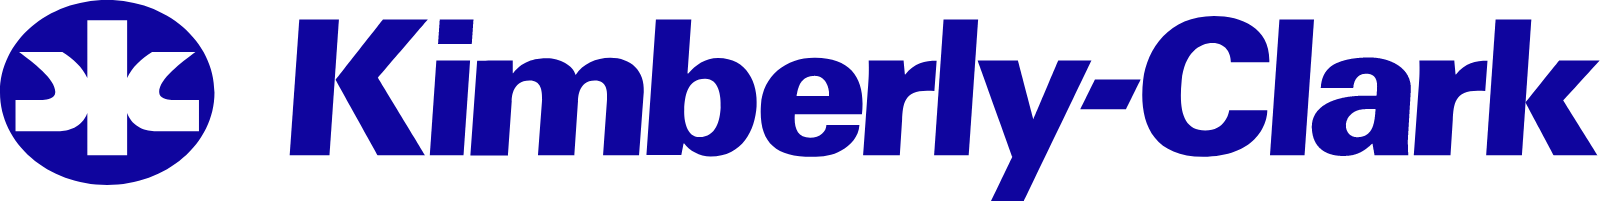 Kimberly-Clark logo large (transparent PNG)